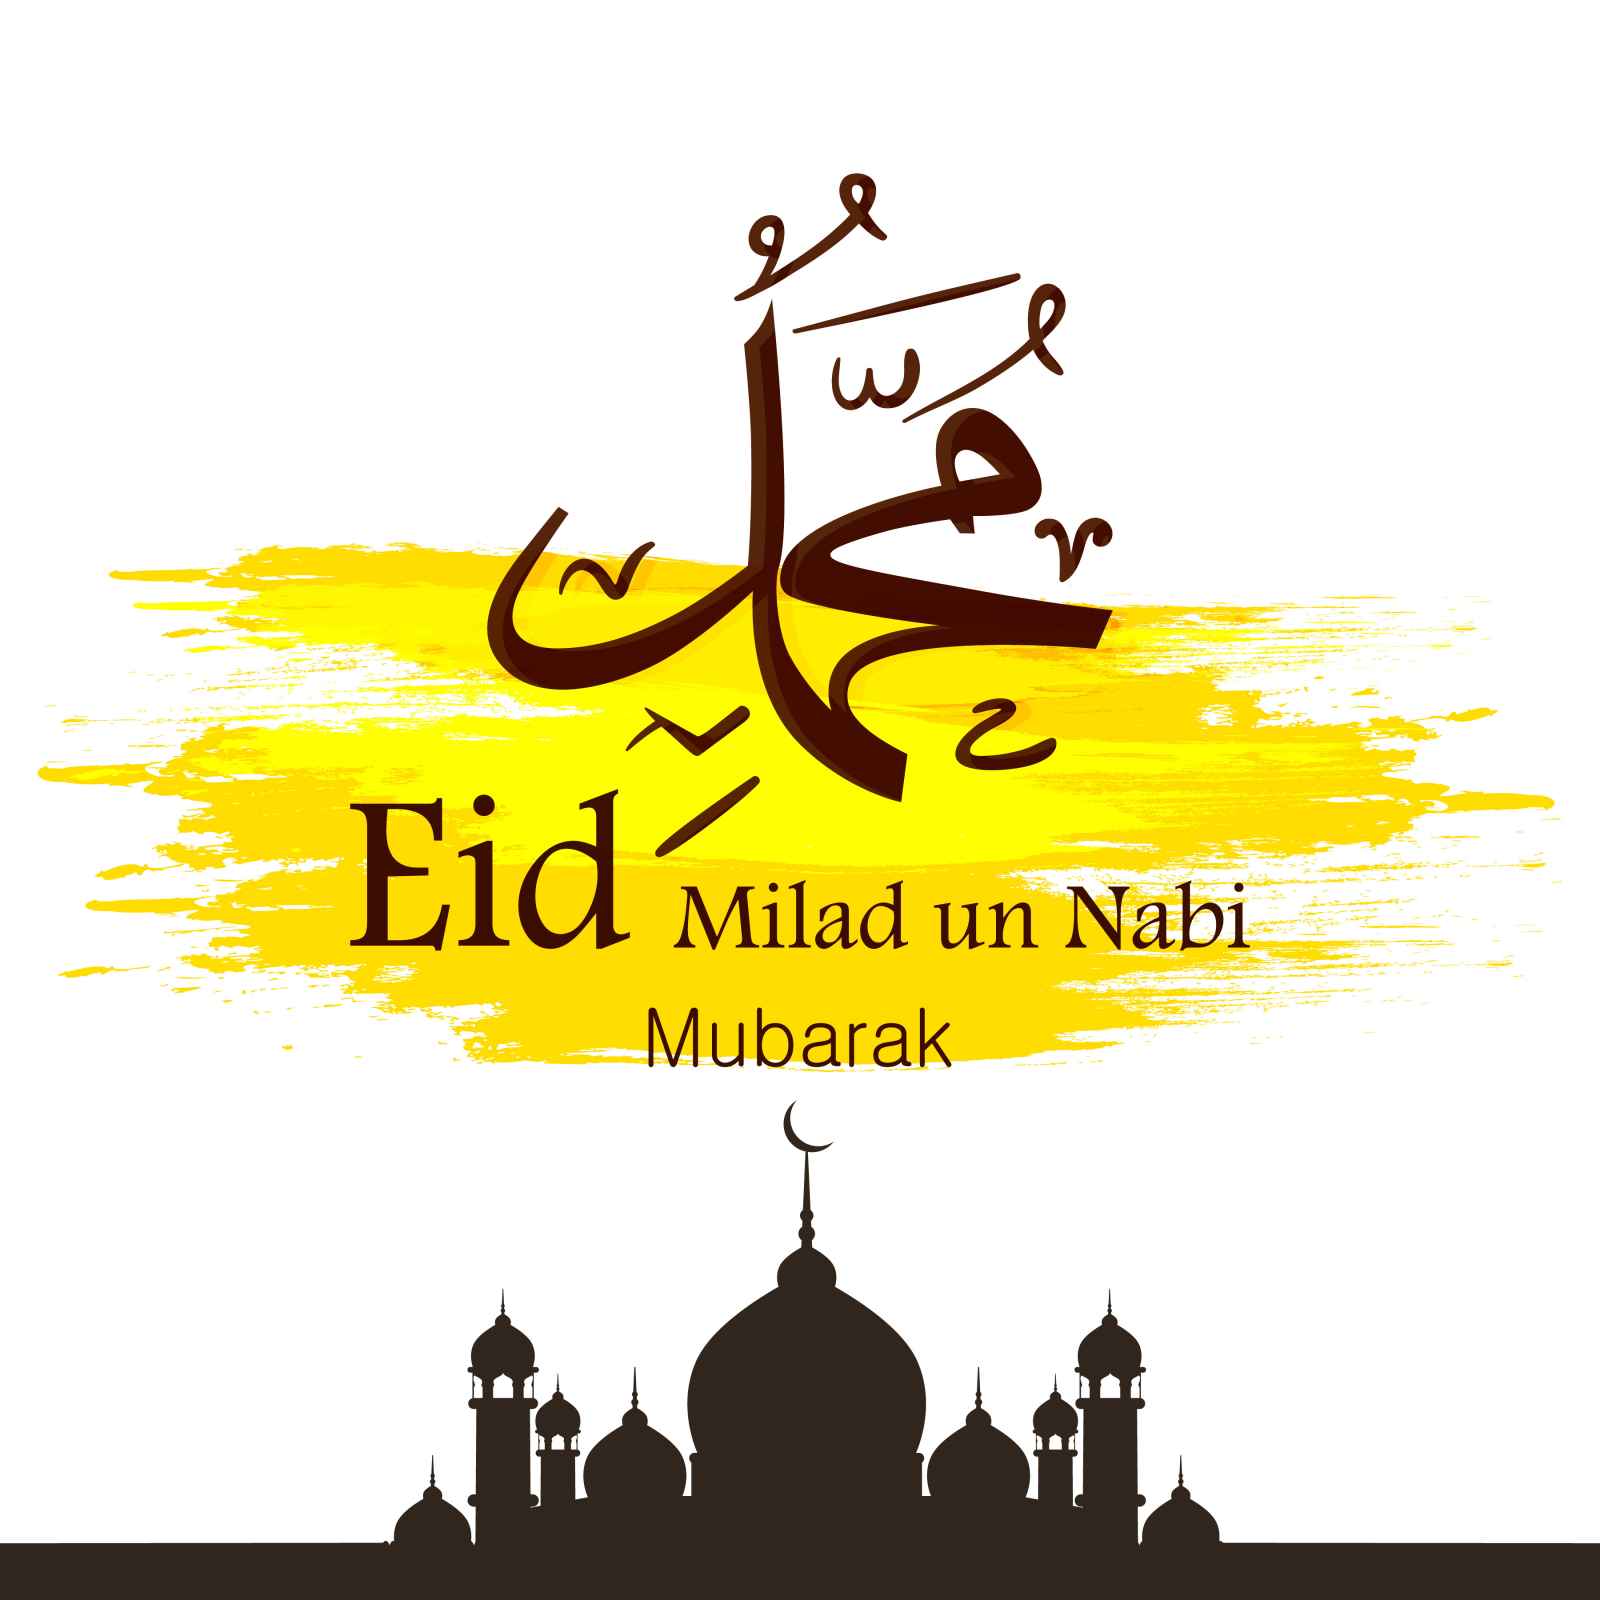 eid-milad-un-nabi-greetings (1)